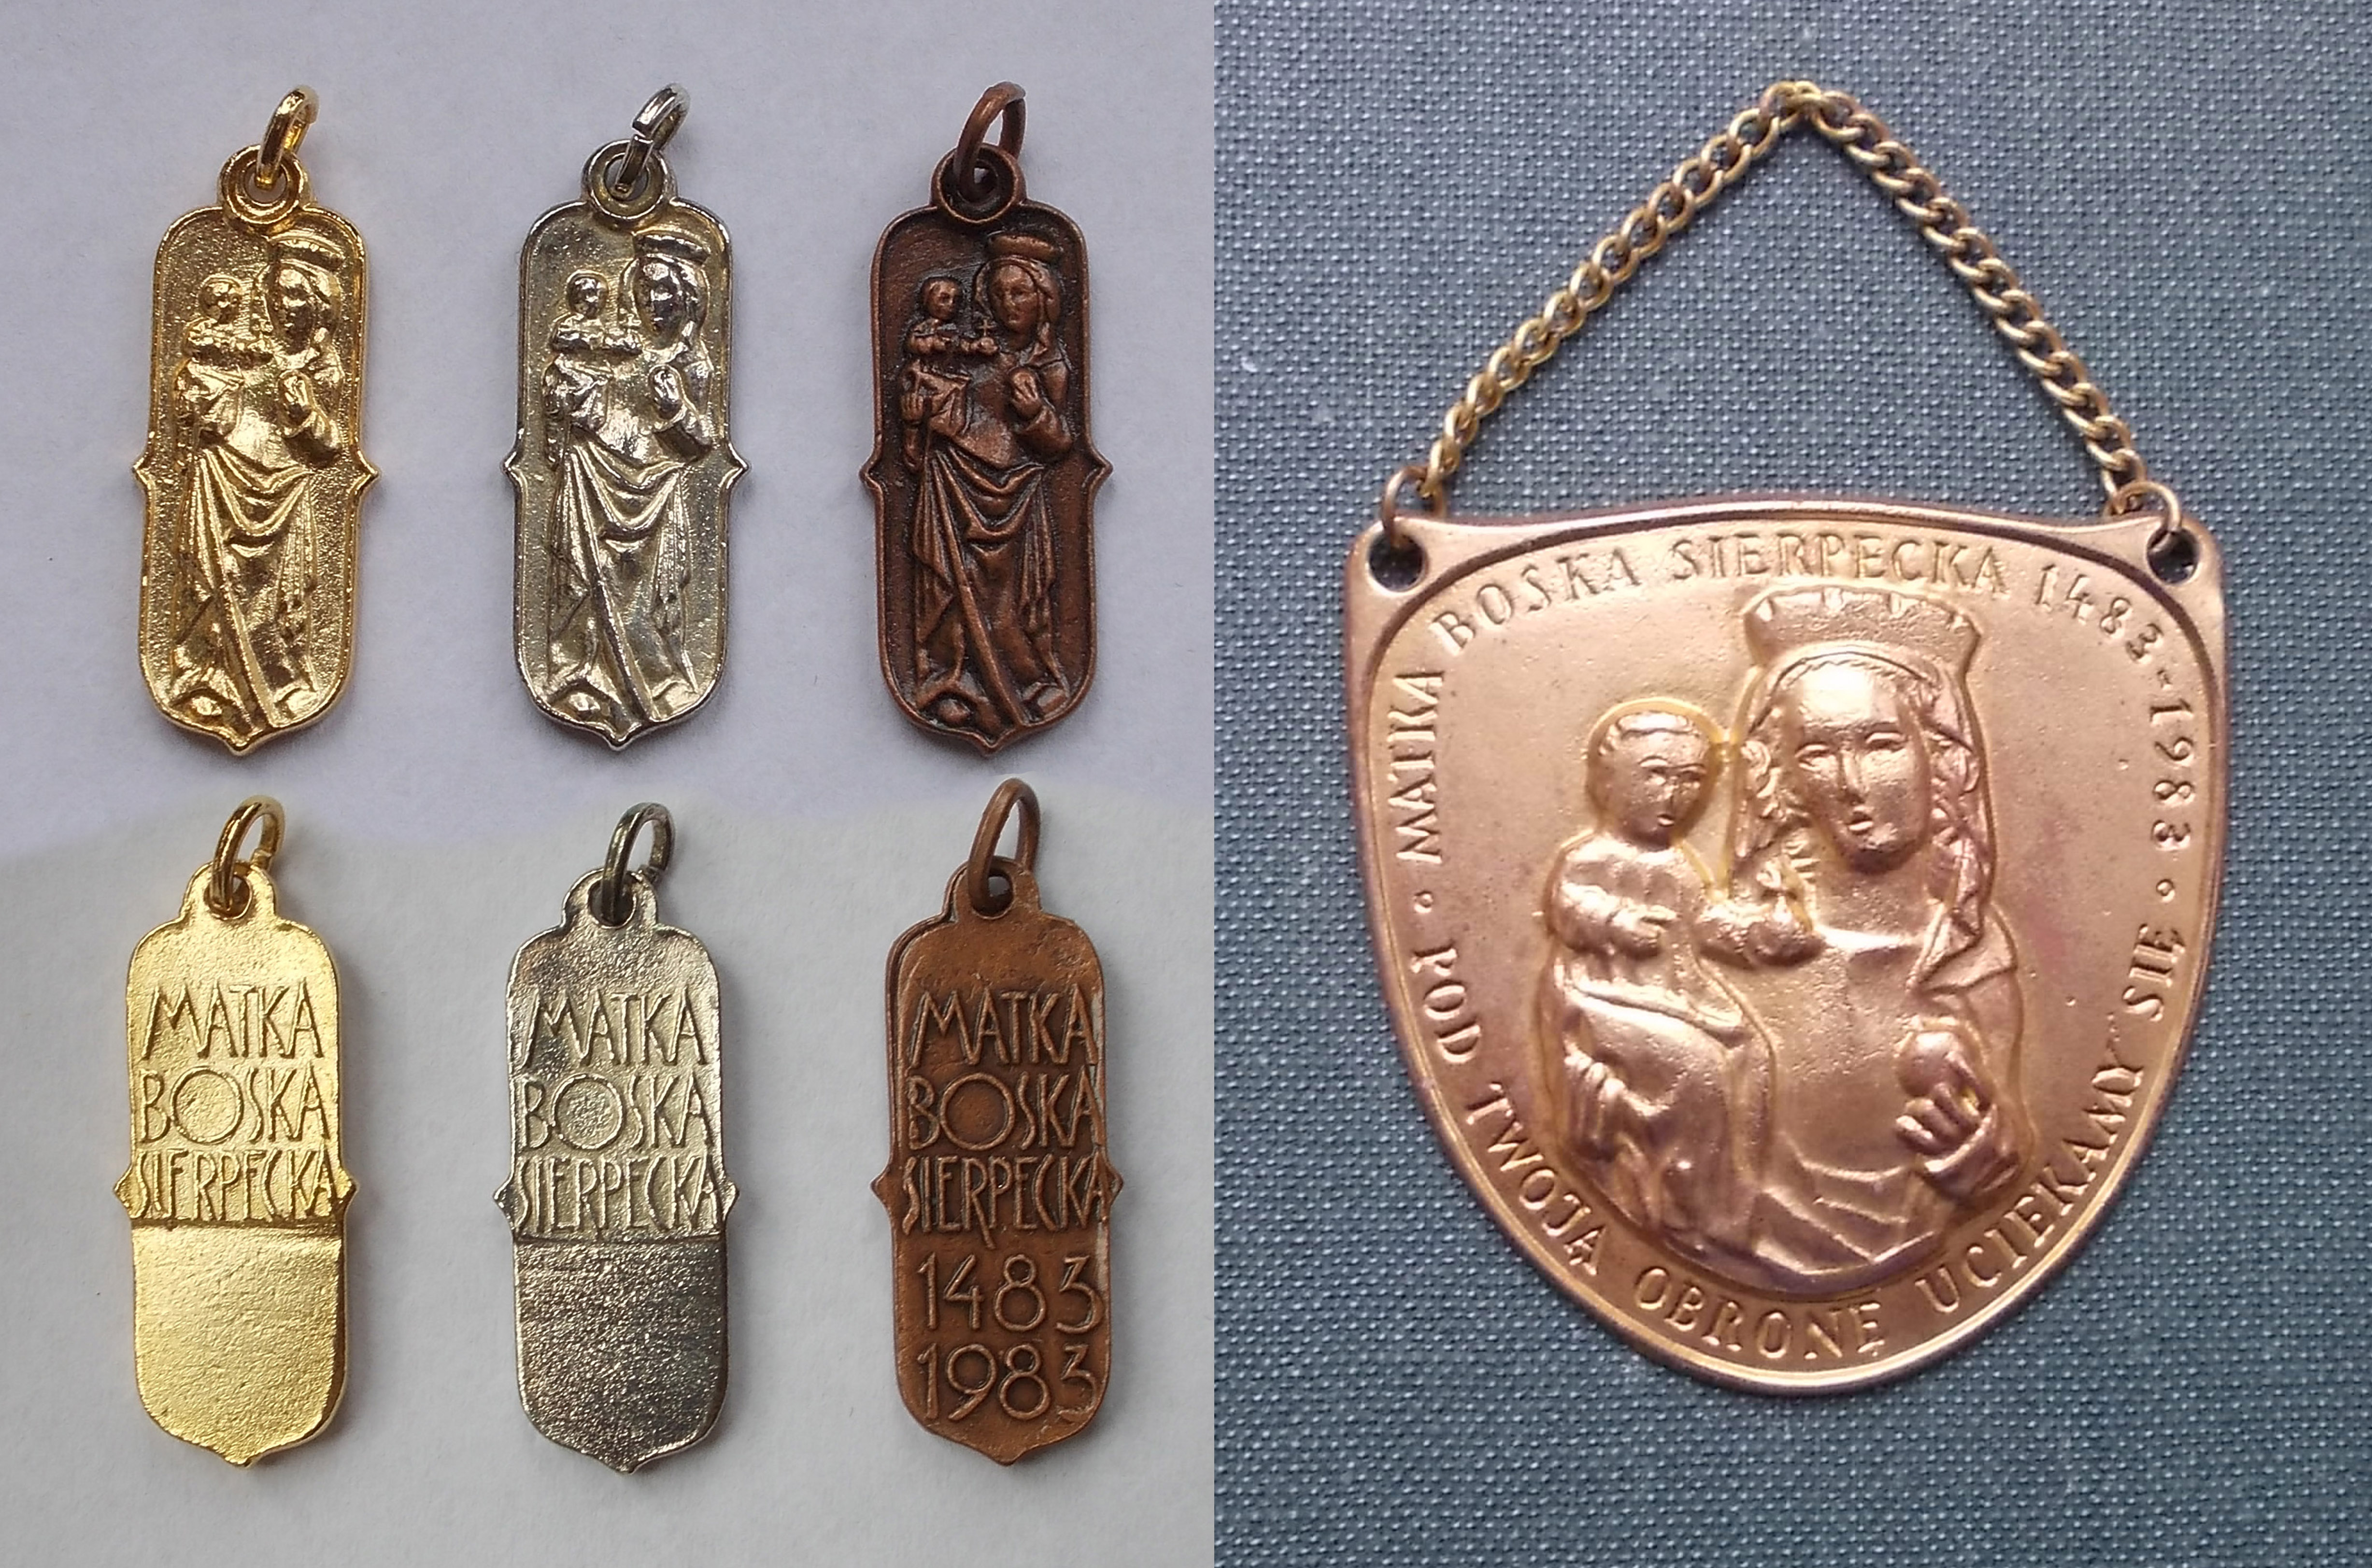 Medaliki i ryngraf z 1983 roku z Matką Bożą Sierpecką